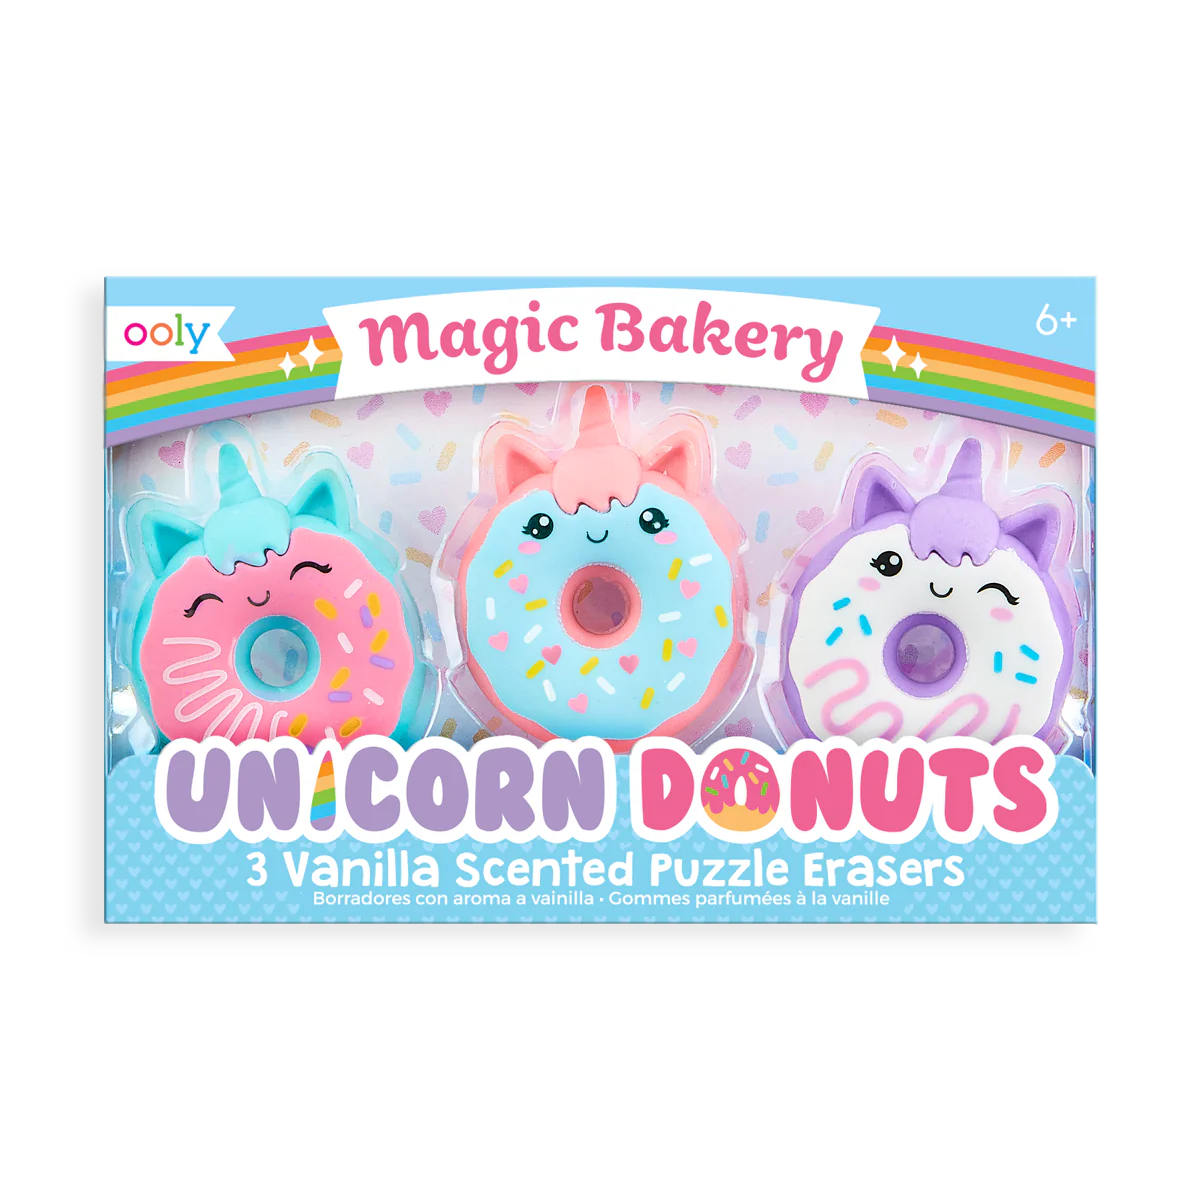 Magic Bakery Unicorn Donut Scented Erasers